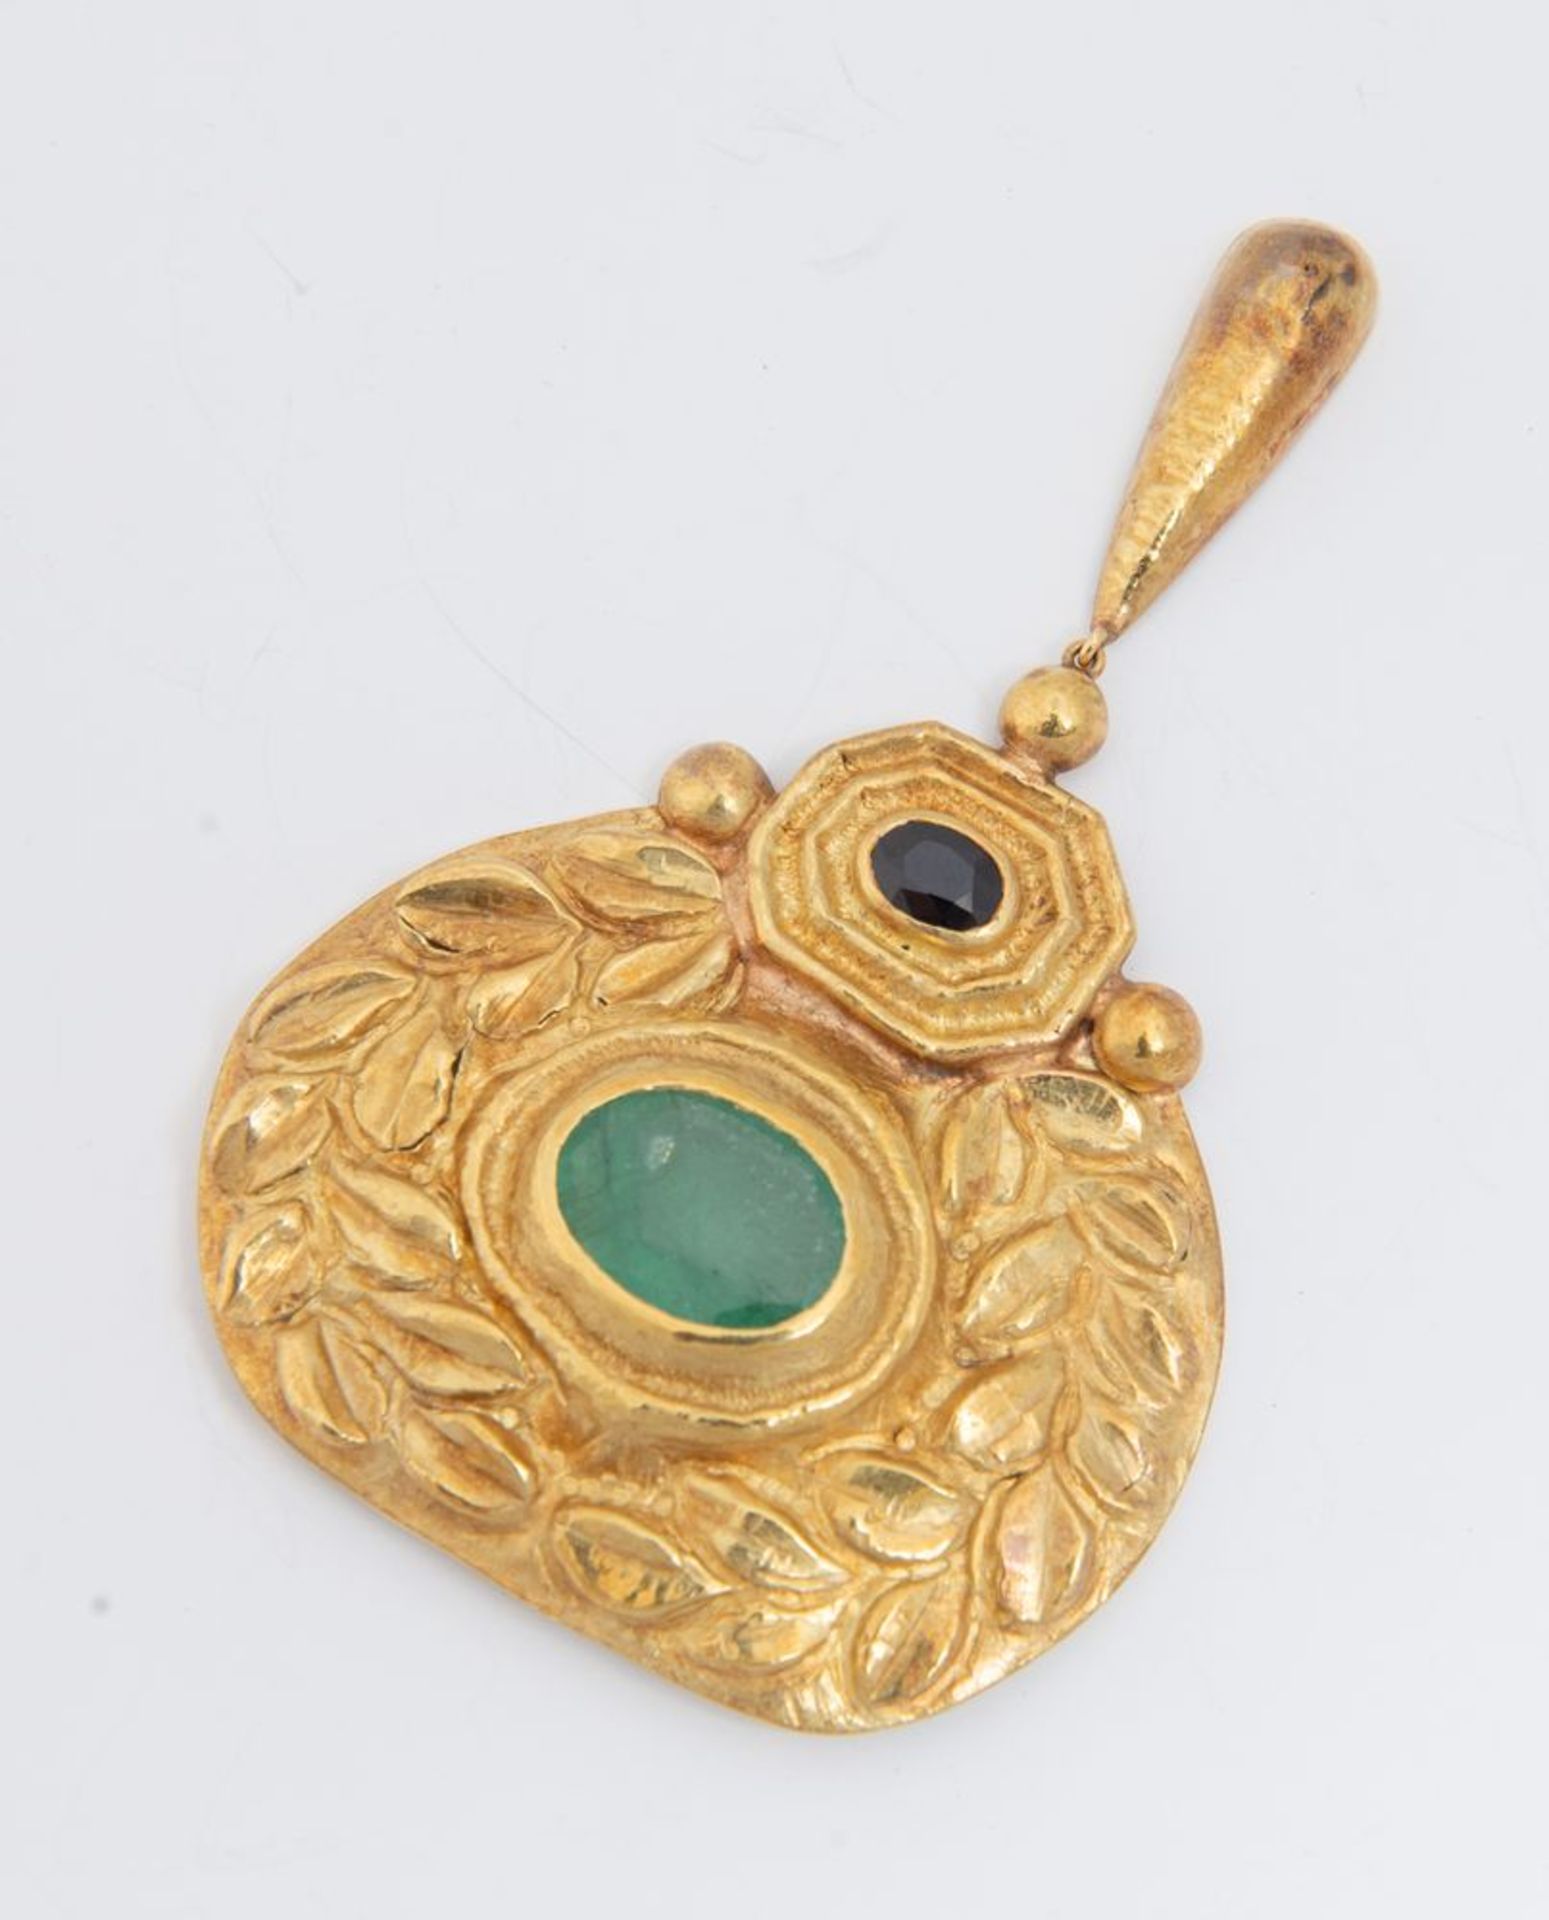 Pendente in oro, zaffiro e smeraldo.
Realizzato come un medaglione sbalzato e inciso a motivi vegeta - Bild 2 aus 3